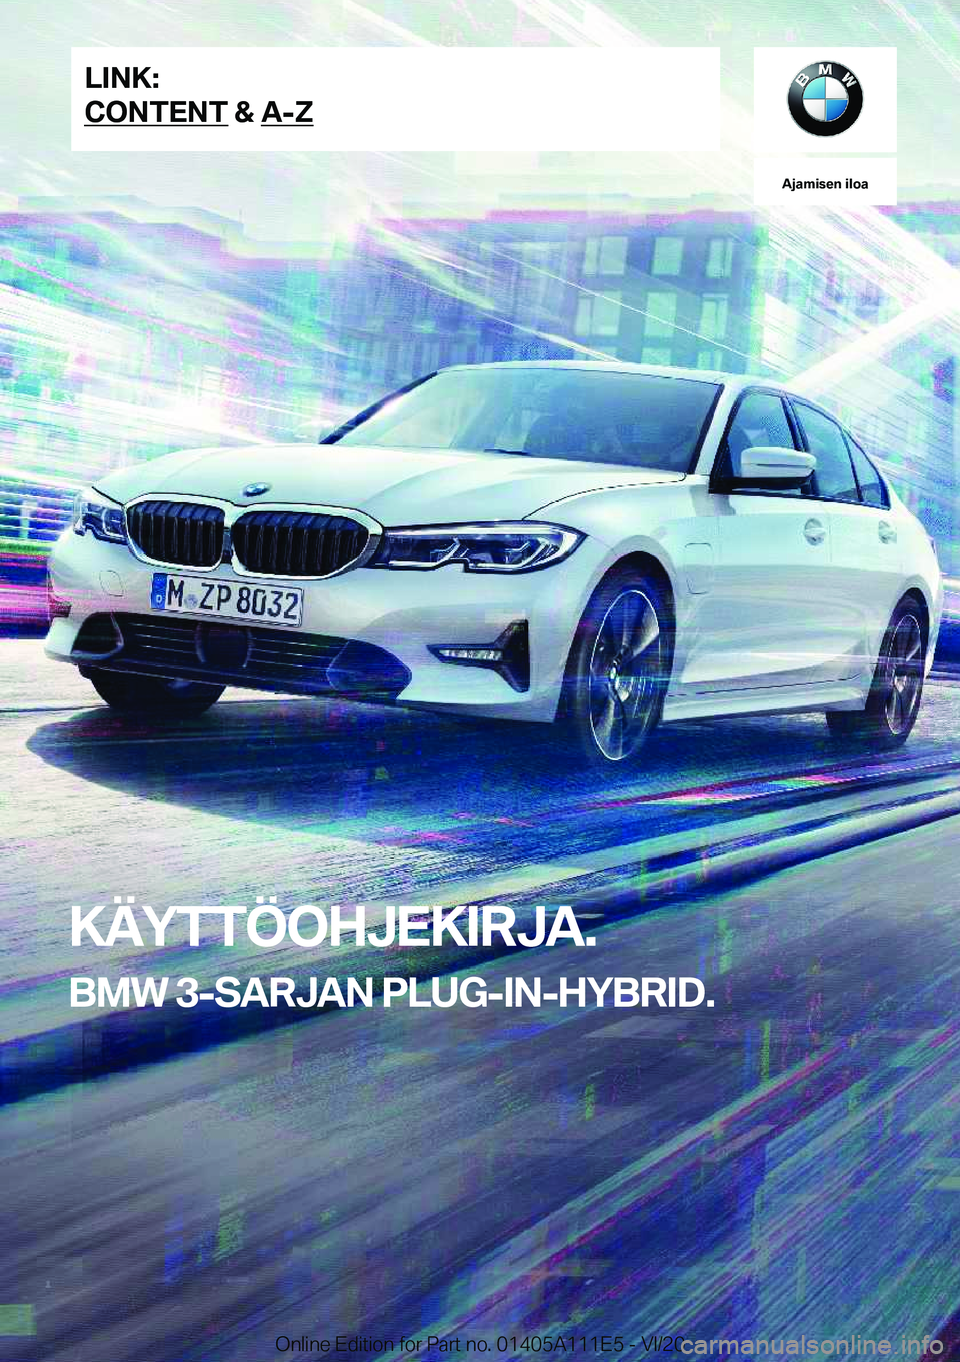 BMW 3 SERIES SEDAN PLUG-IN HYBRID 2021  Omistajan Käsikirja (in Finnish) �A�j�a�m�i�s�e�n��i�l�o�a
�K�